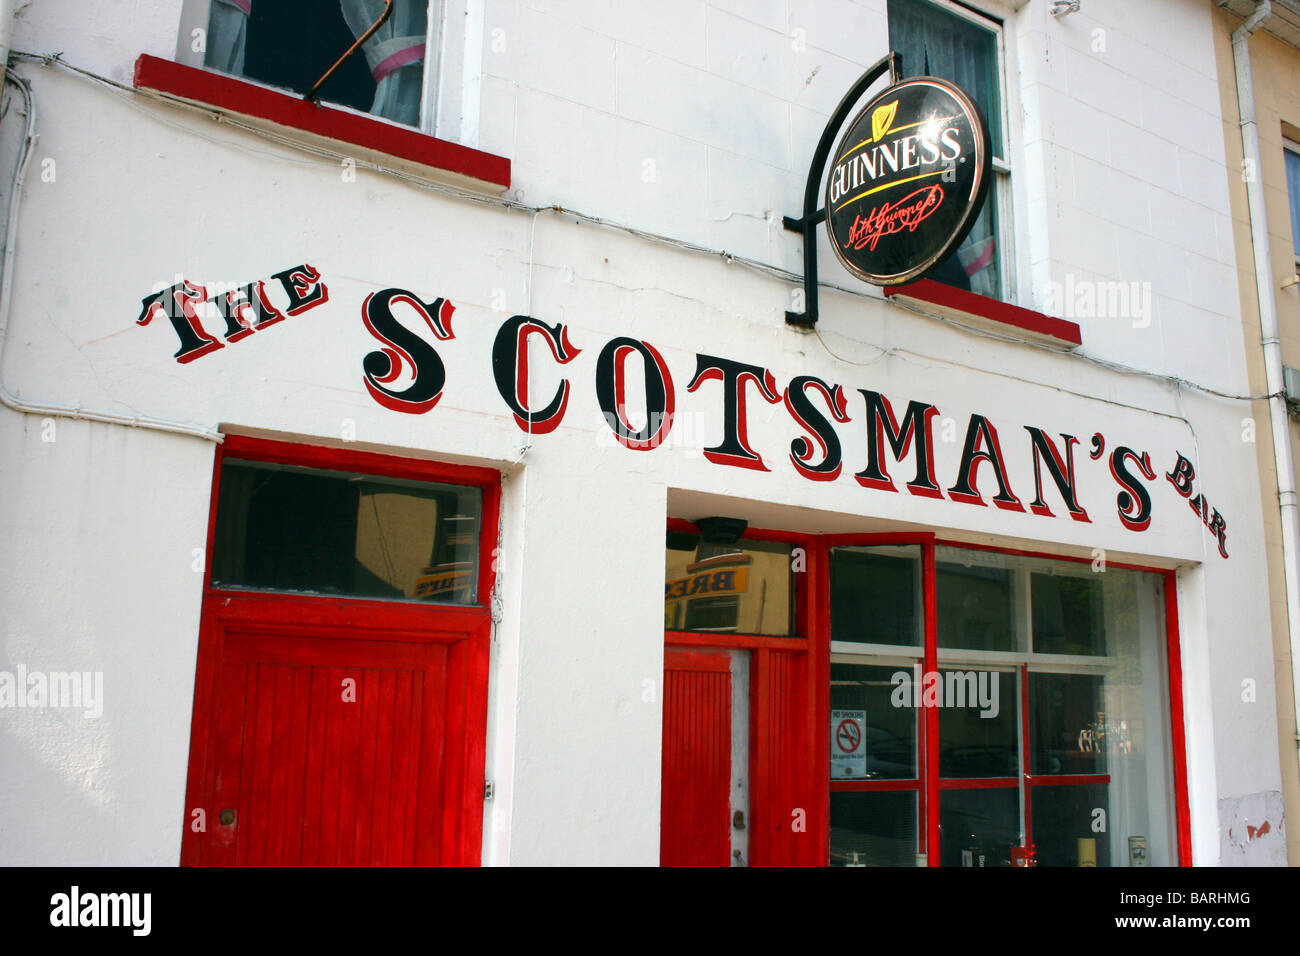 Der Schotte Bar, alte irische Pub in Donegal Town, Irland Stockfoto